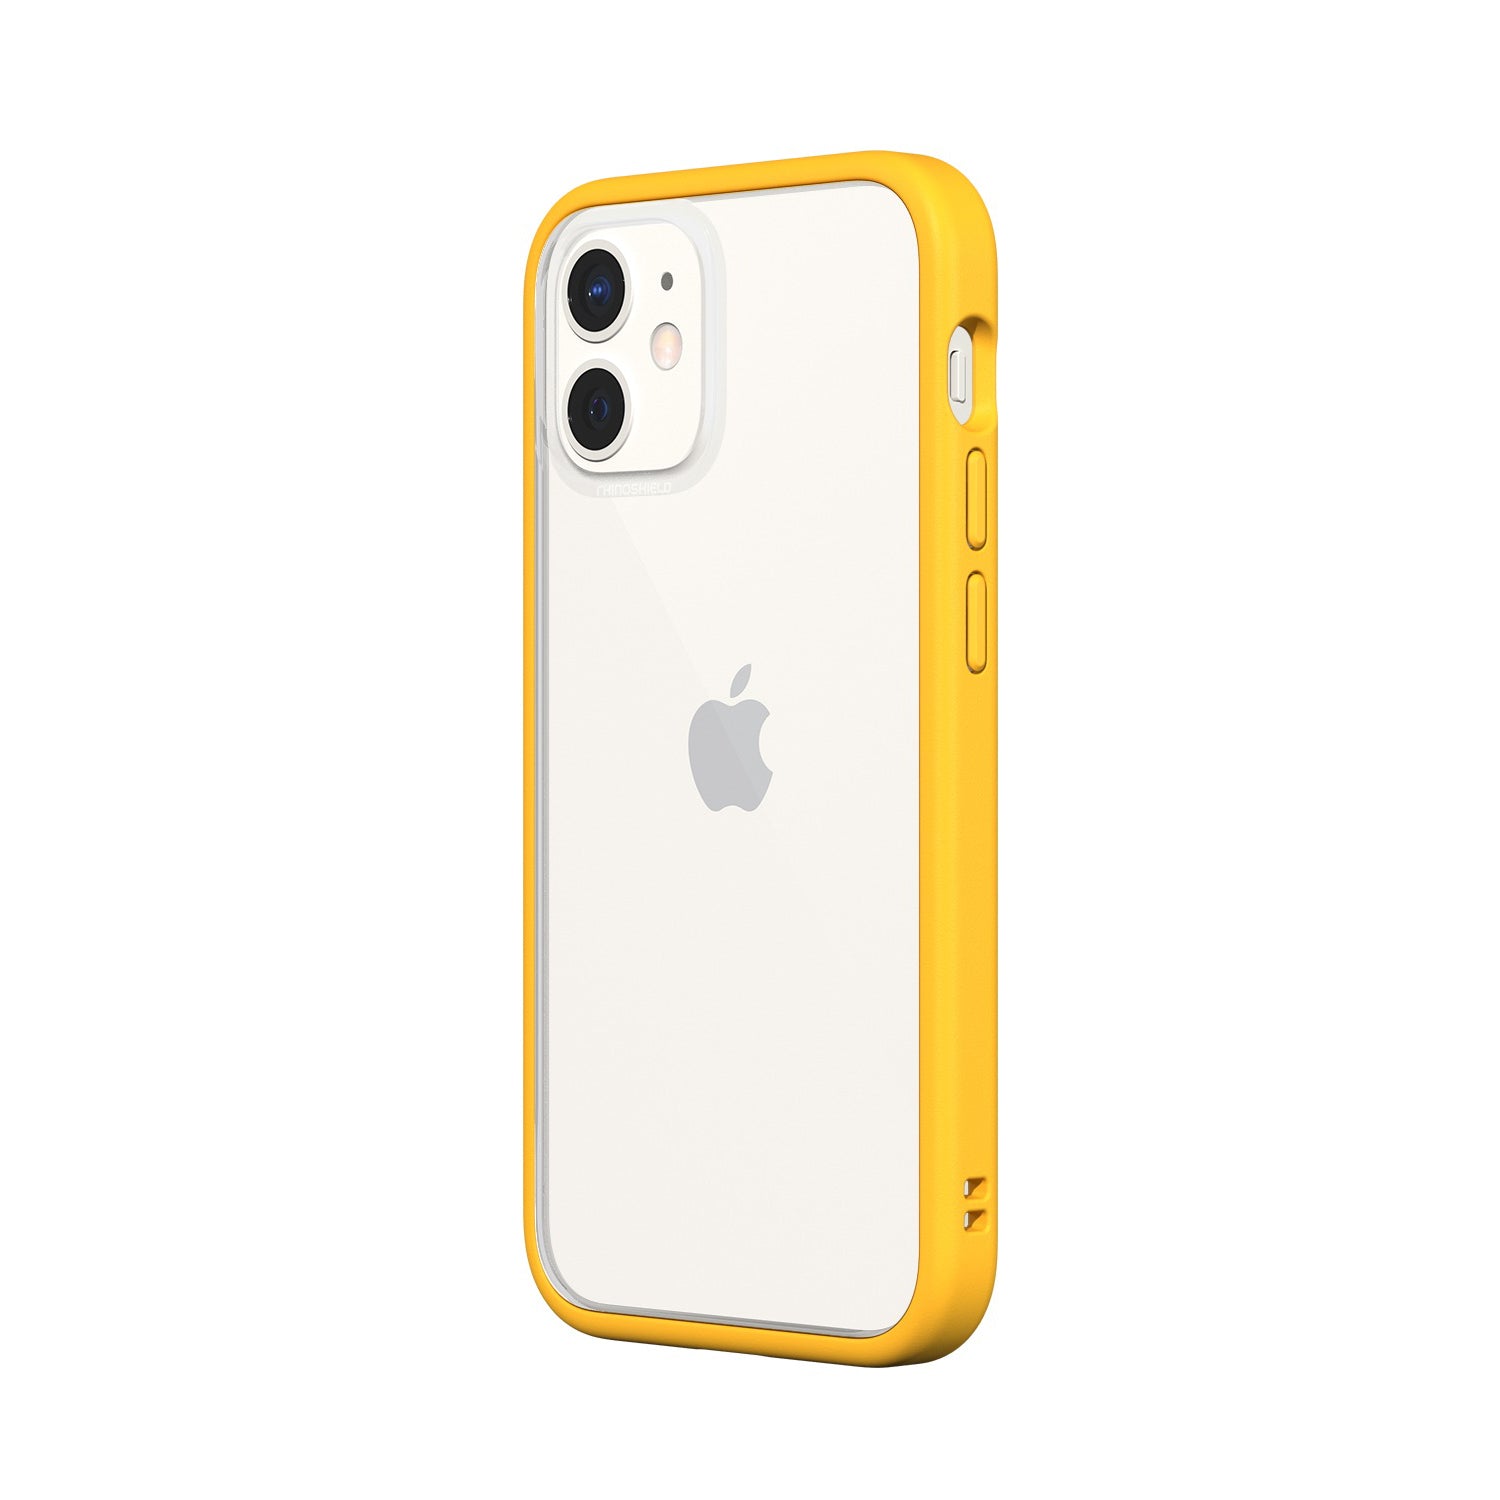 RhinoShield MOD NX 2-in-1 Case For iPhone 12 mini - Yellow | Mac Addict